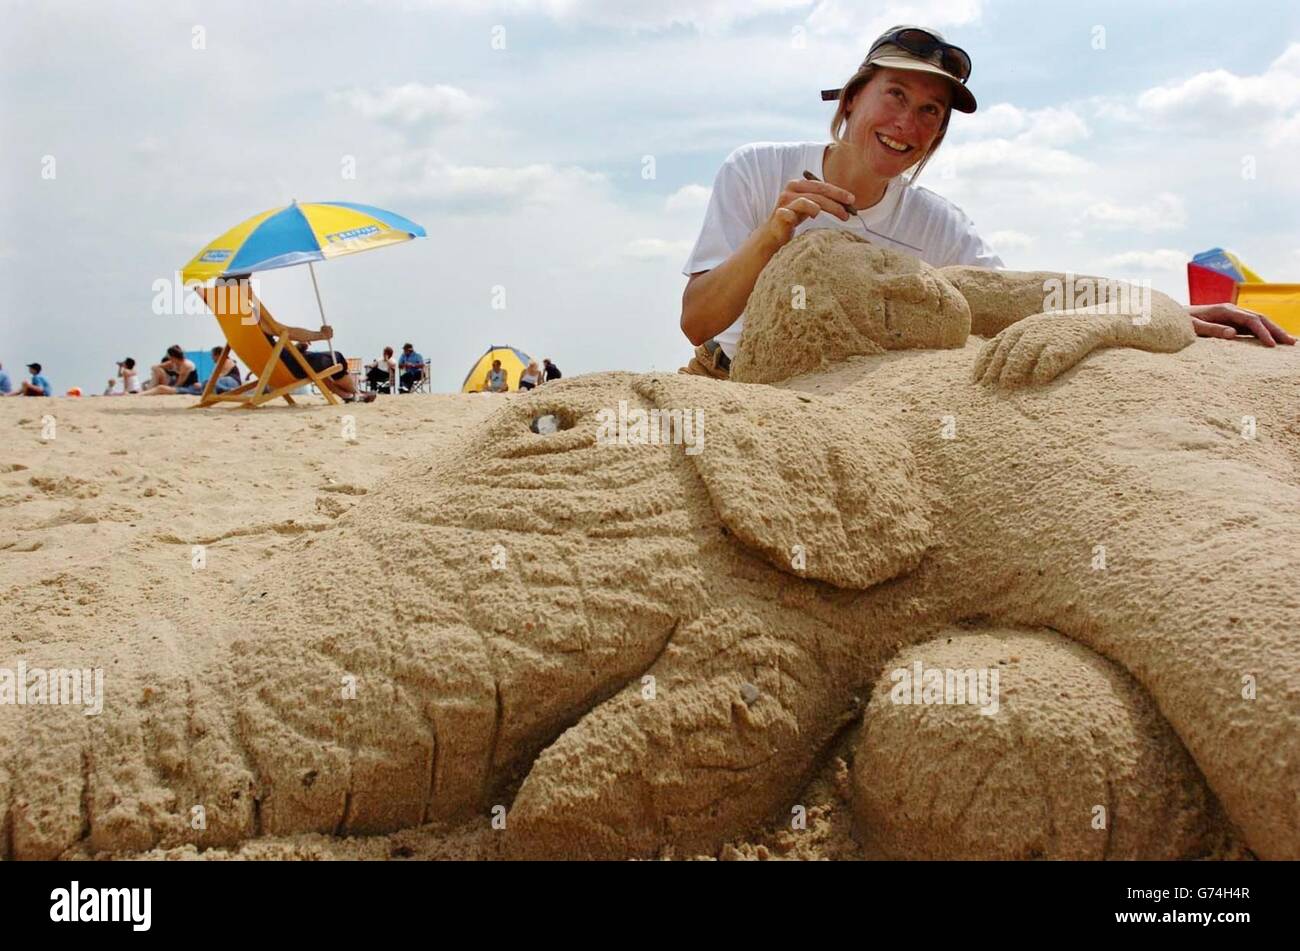 Remy Geerts, die eigens für die Veranstaltung aus Holland geflogen ist, setzt mit dieser Show-Skulptur Maßstäbe, da sie am Teletext Masters of the Sand Competition am Great Yarmouth Beach teilnimmt. Junge und alte Teilnehmer in drei verschiedenen Kategorien haben die Chance, einen Wochenurlaub im Wert von 1000 oder 400 Einkaufsgutscheinen zu gewinnen. Stockfoto